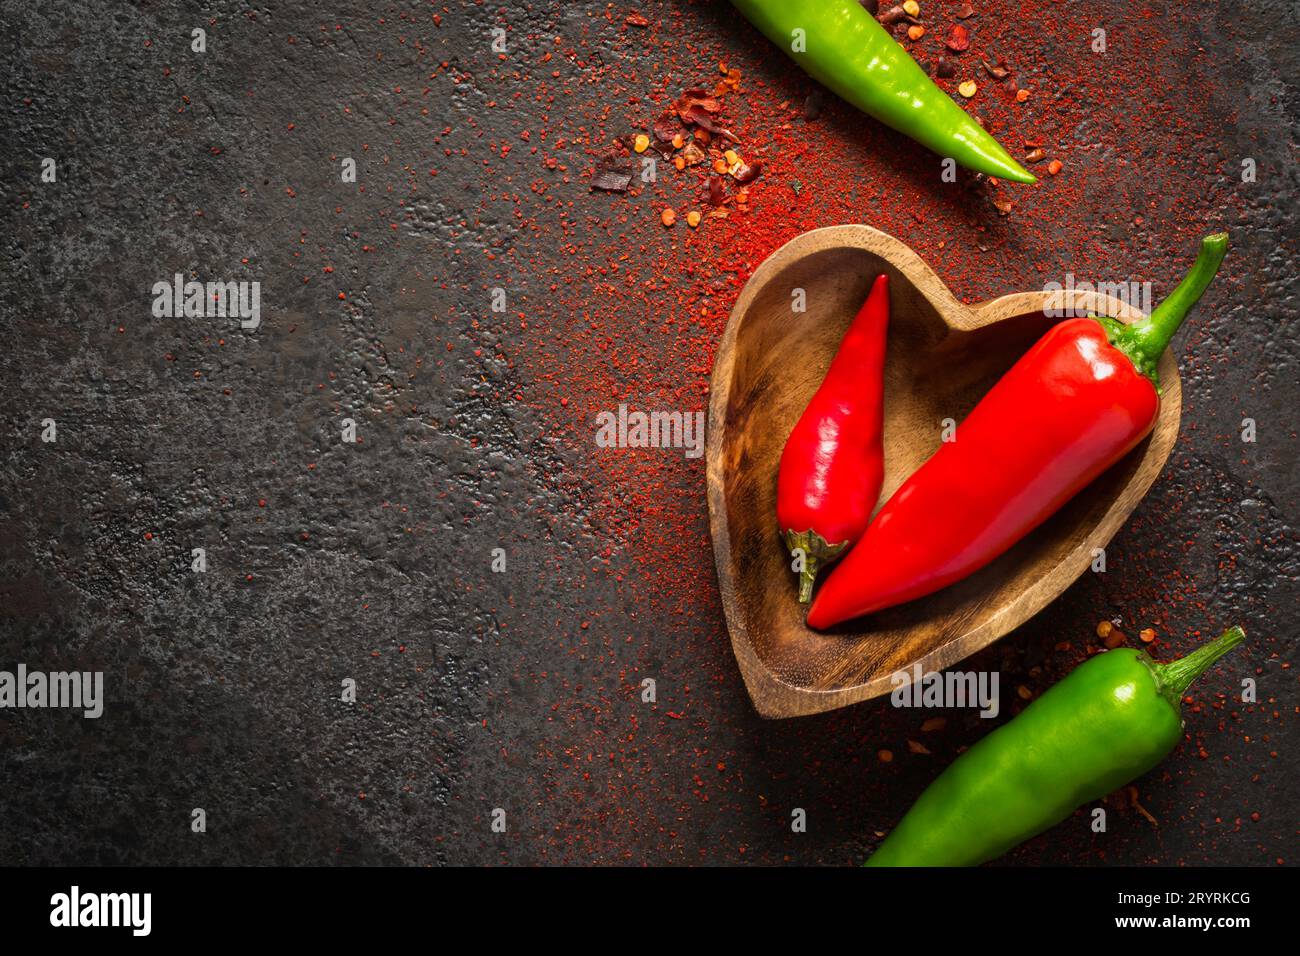 Spice Food sfondo scuro. Peperoncino rosso e verde in una ciotola di legno Foto Stock